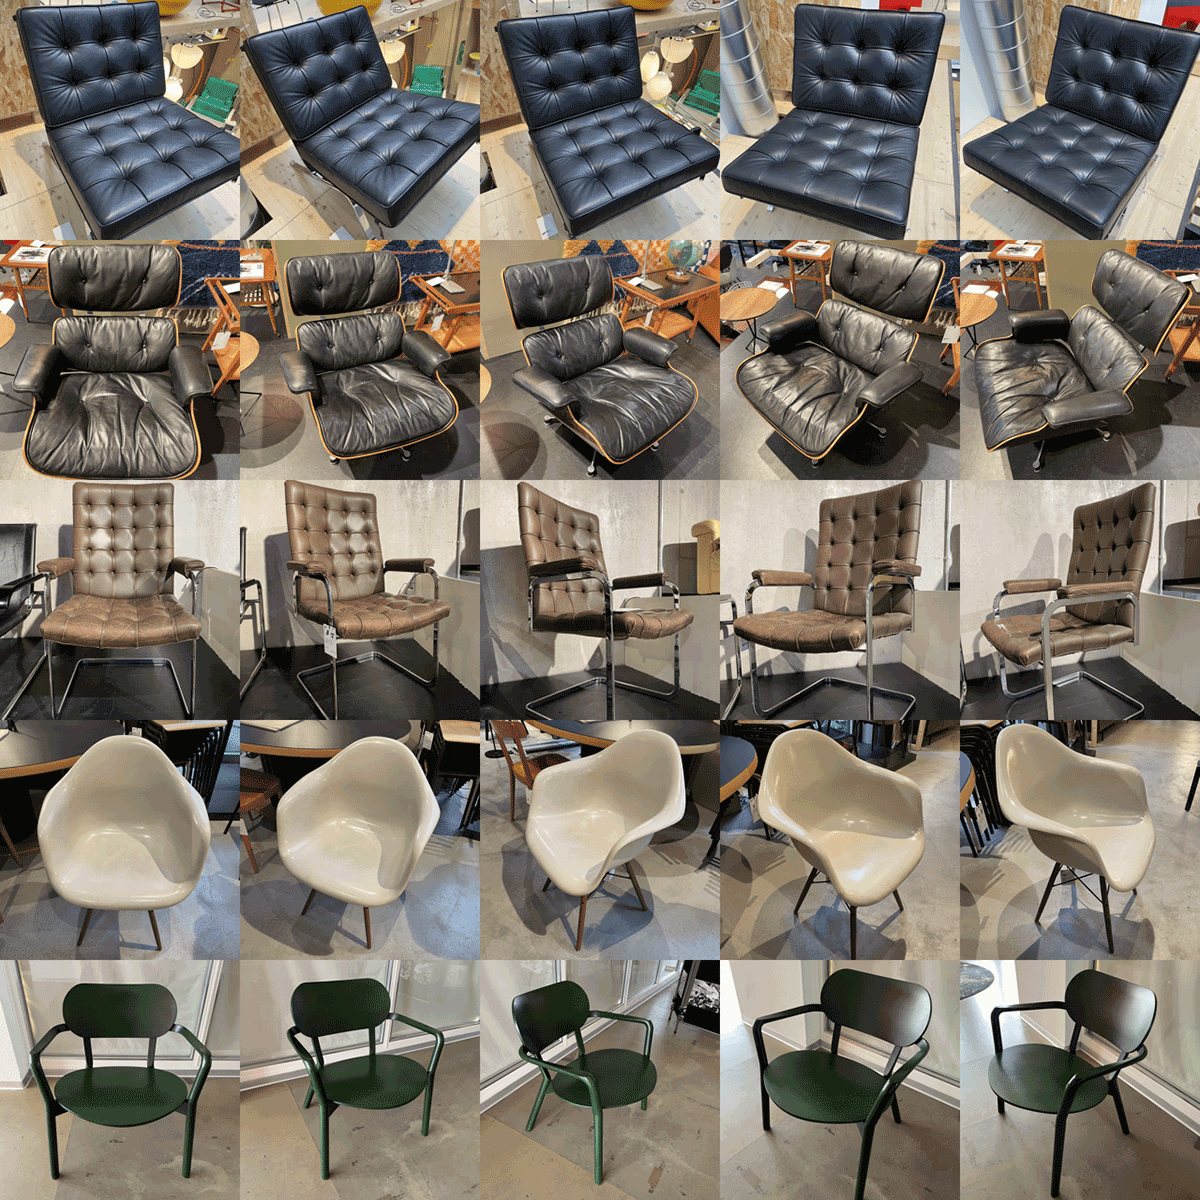 그림 1. 샘플 가구 디자인 회사에서 제작한 의자의 핵심 디자인 미학을 대표하는 다섯 가지 의자 이미지